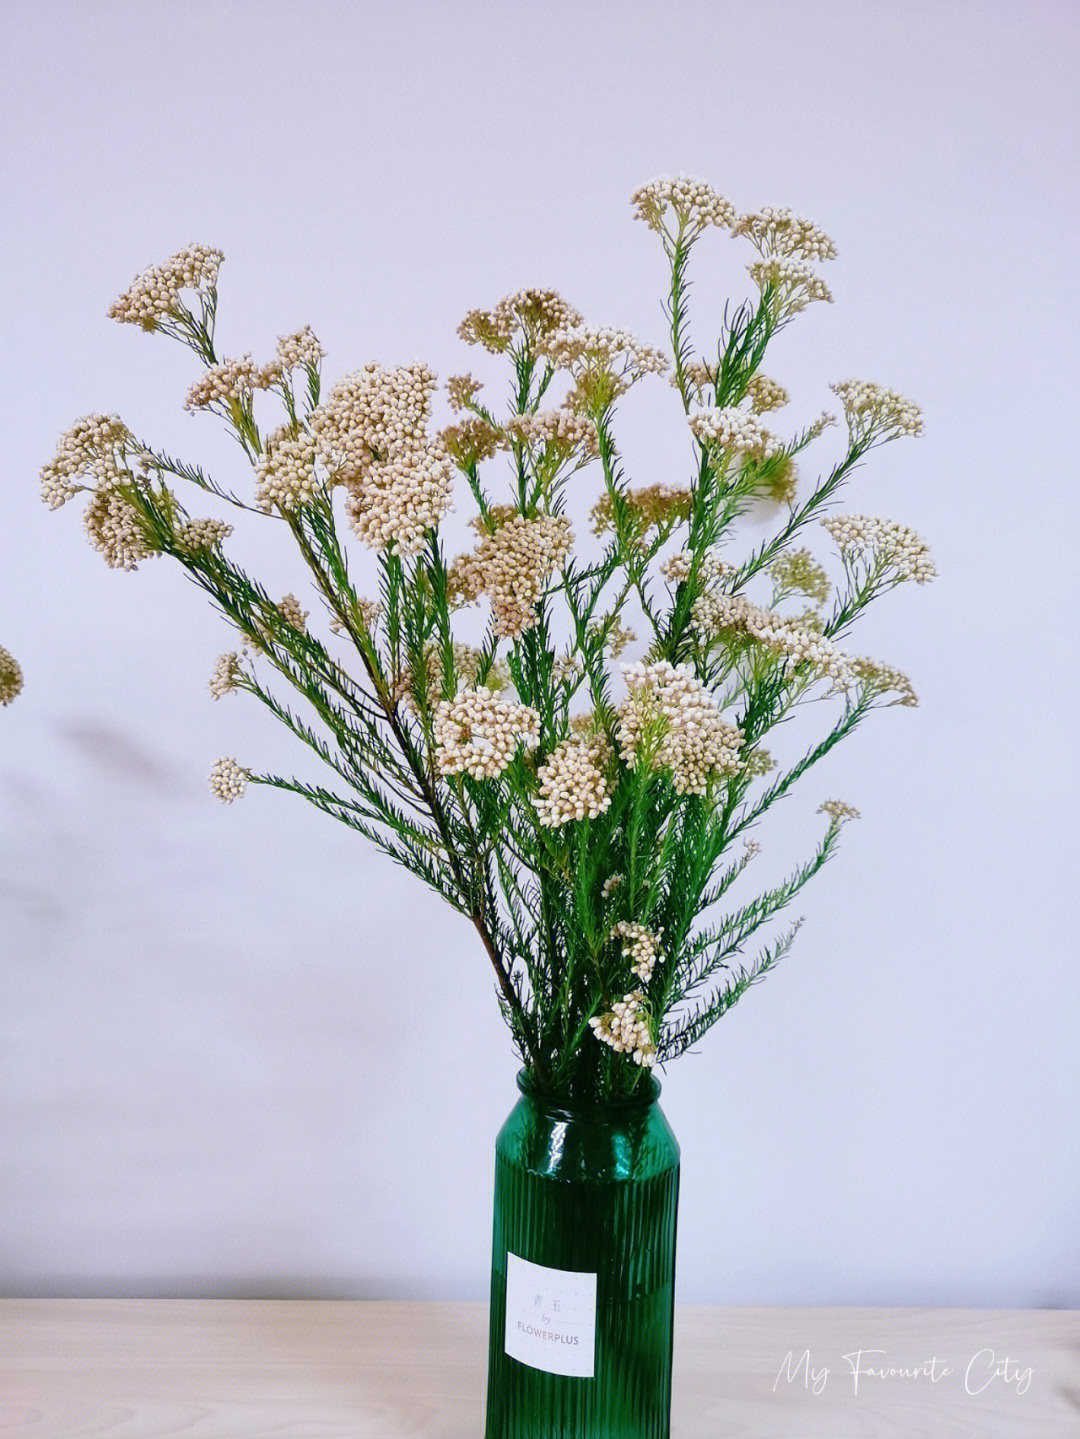 又名:爆米花,小雪球植物分类:菊科原产地:澳大利亚花语:喜悦米花的